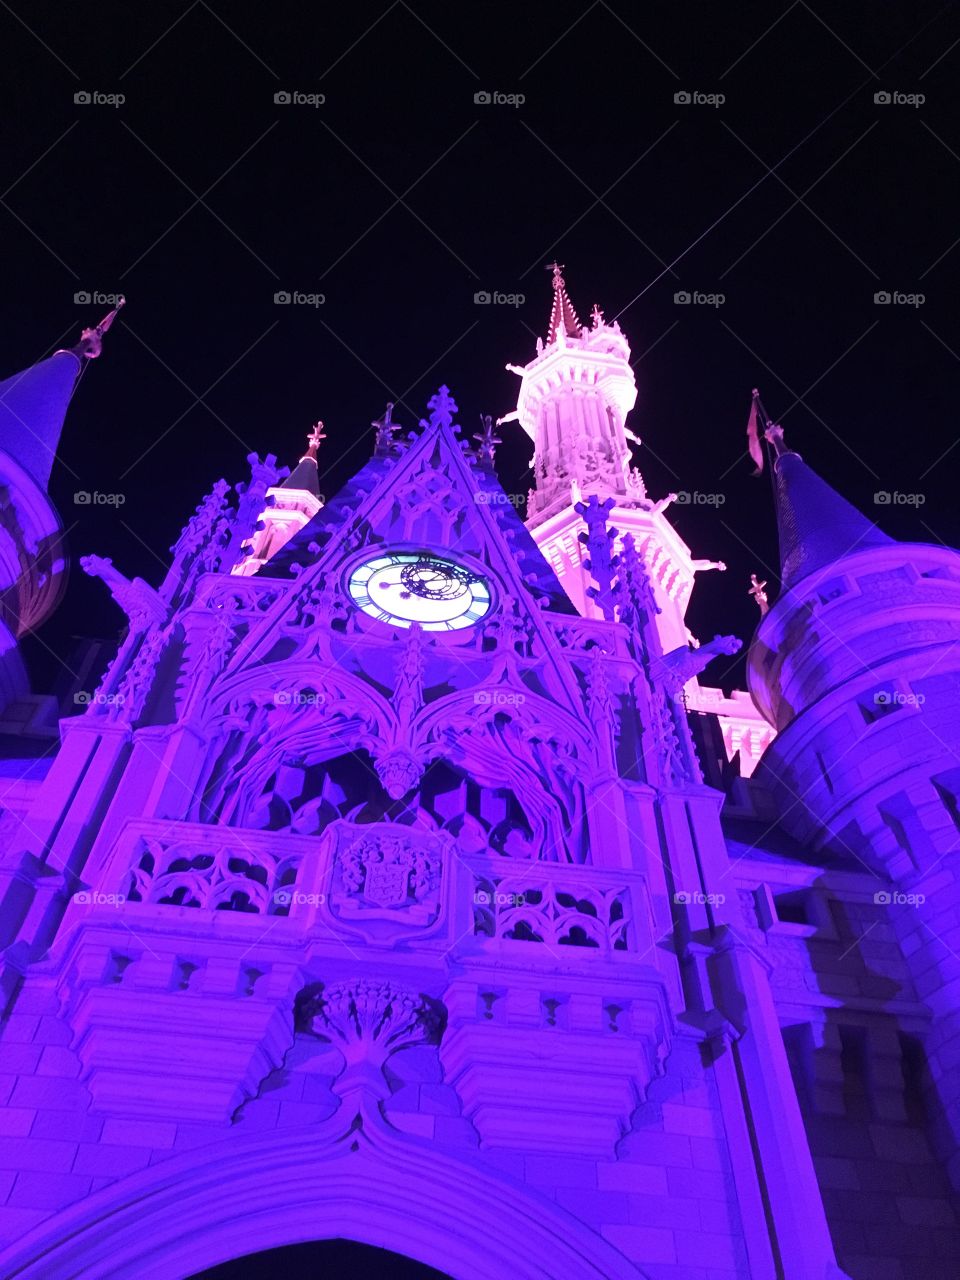 Disney's Cinderella's Castle